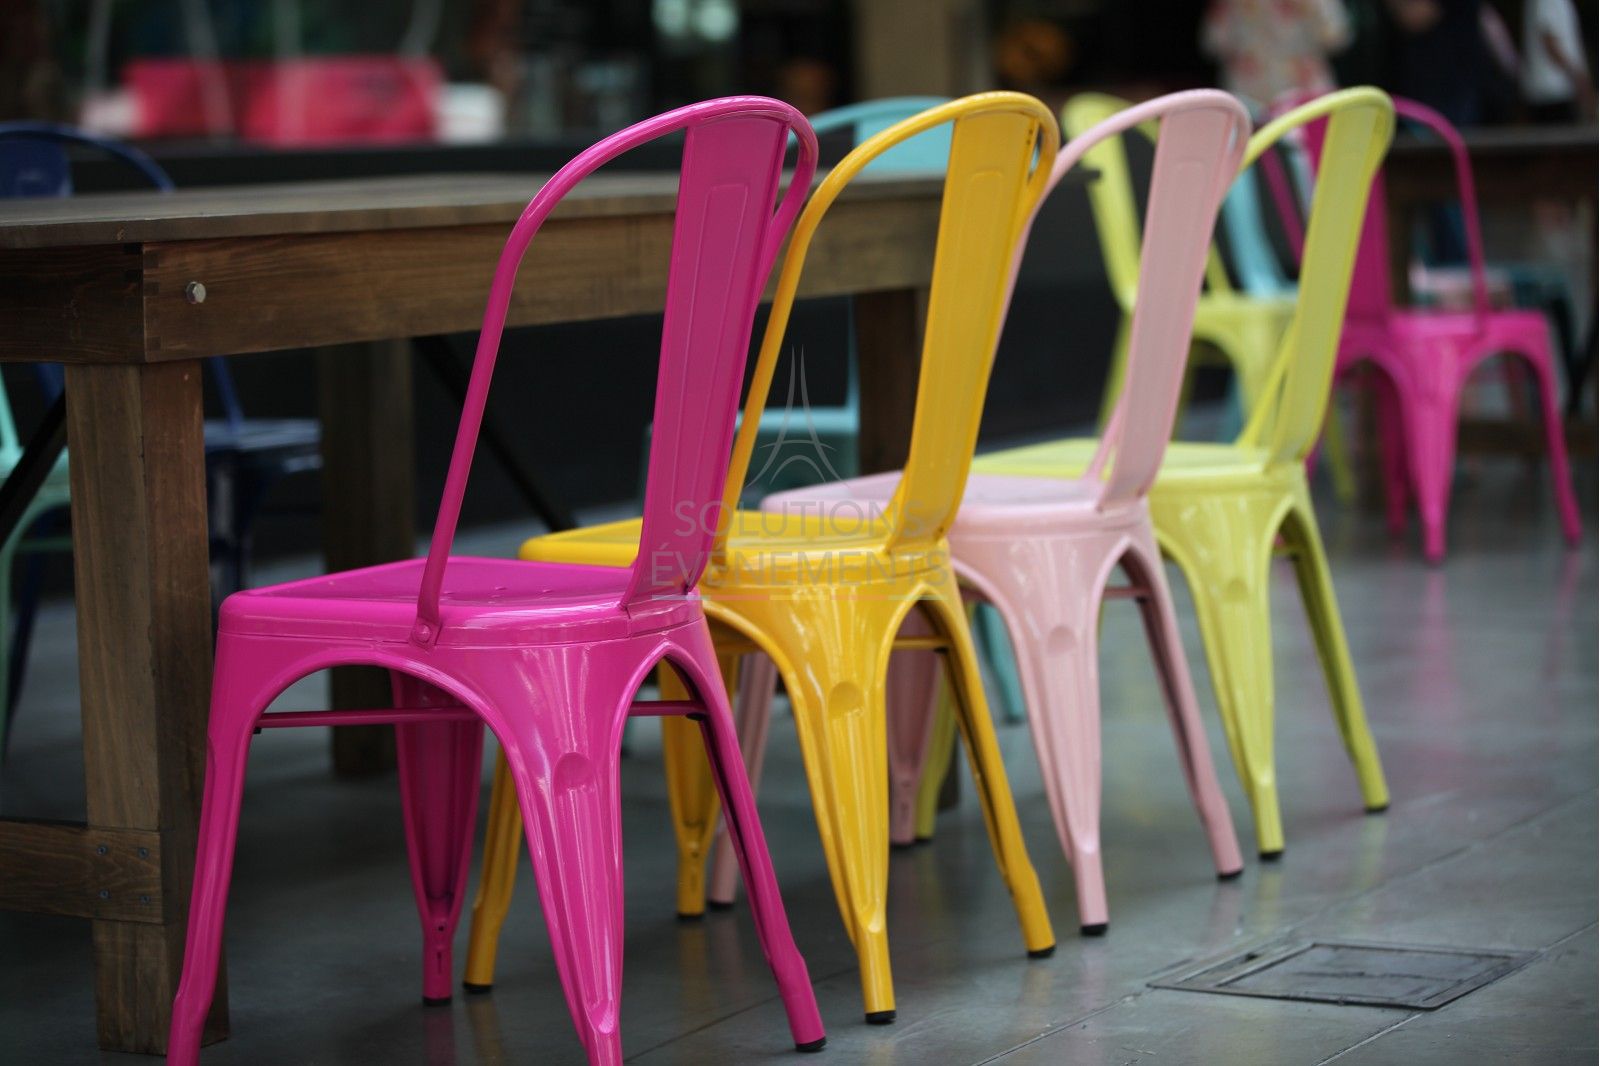 Promo tables et chaises polypro - Table pliante - Chaise pliante